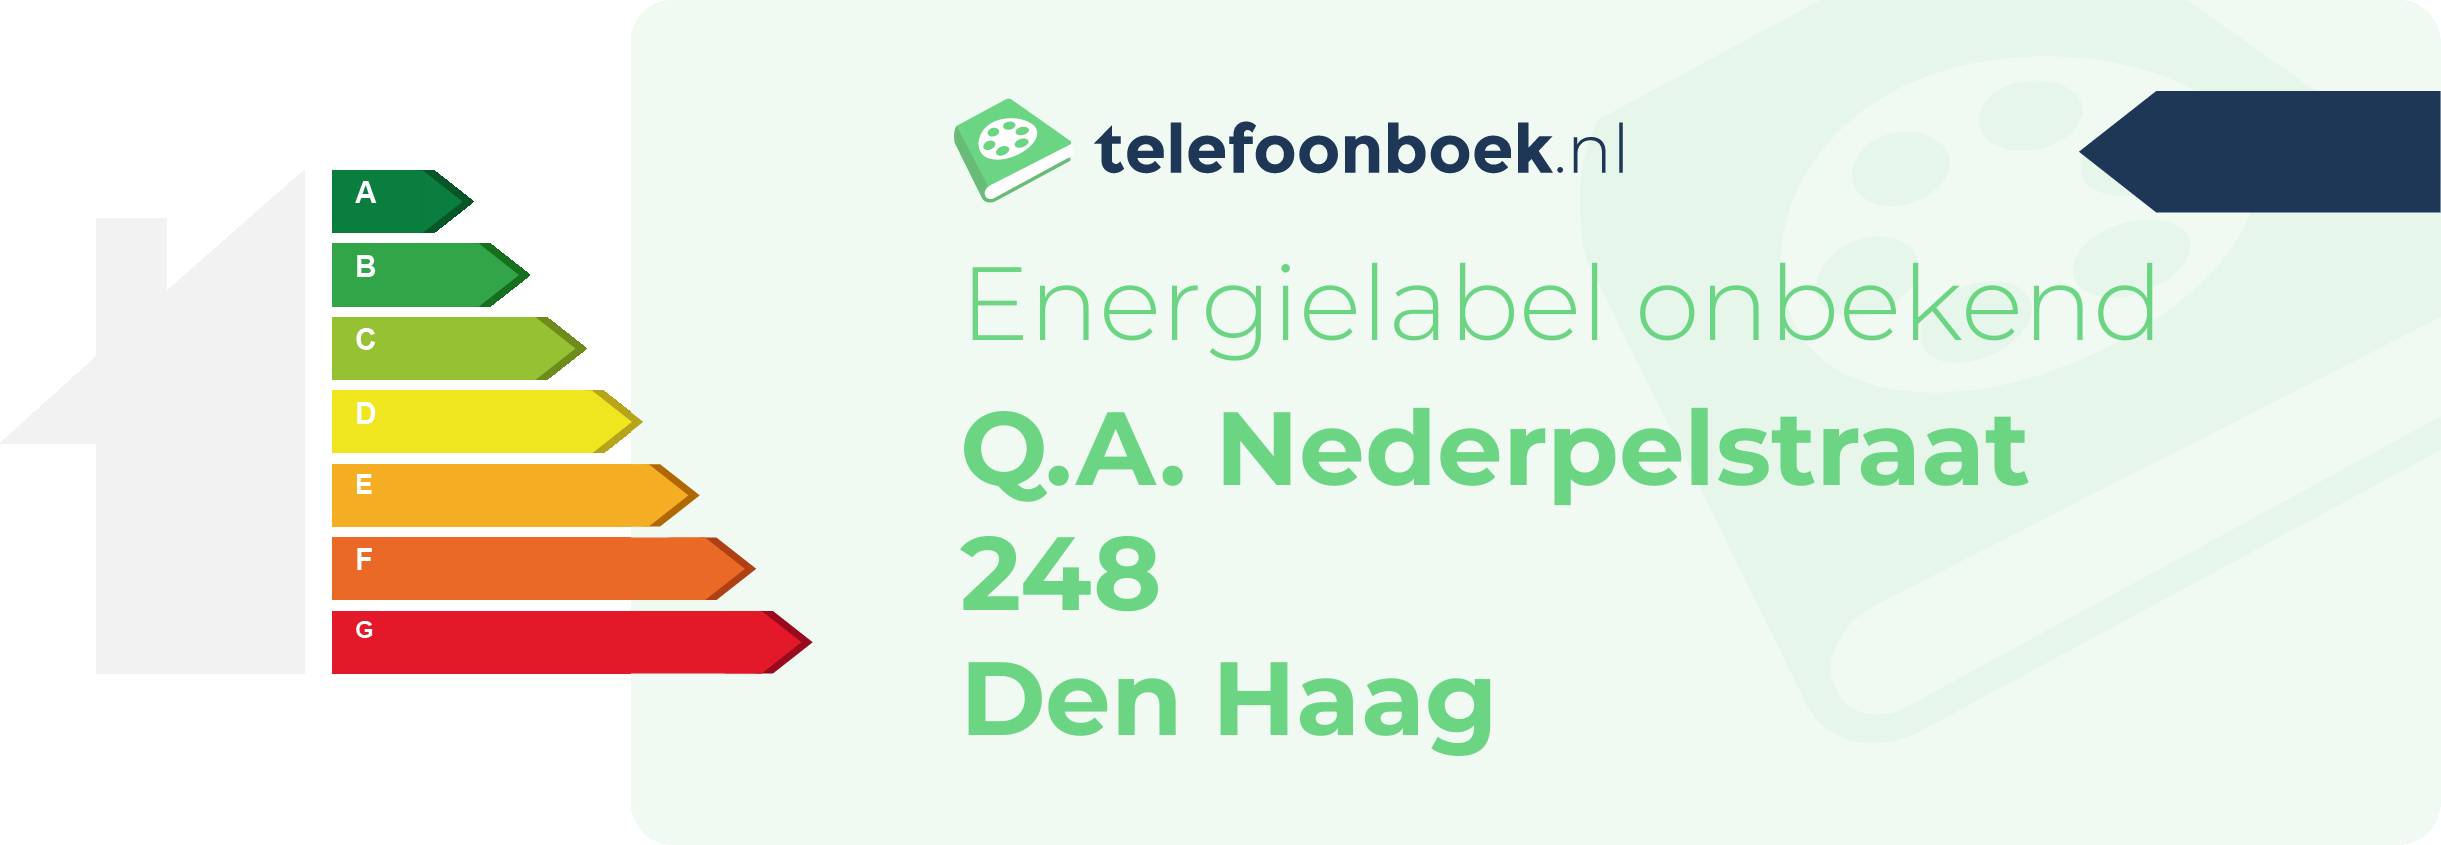 Energielabel Q.A. Nederpelstraat 248 Den Haag